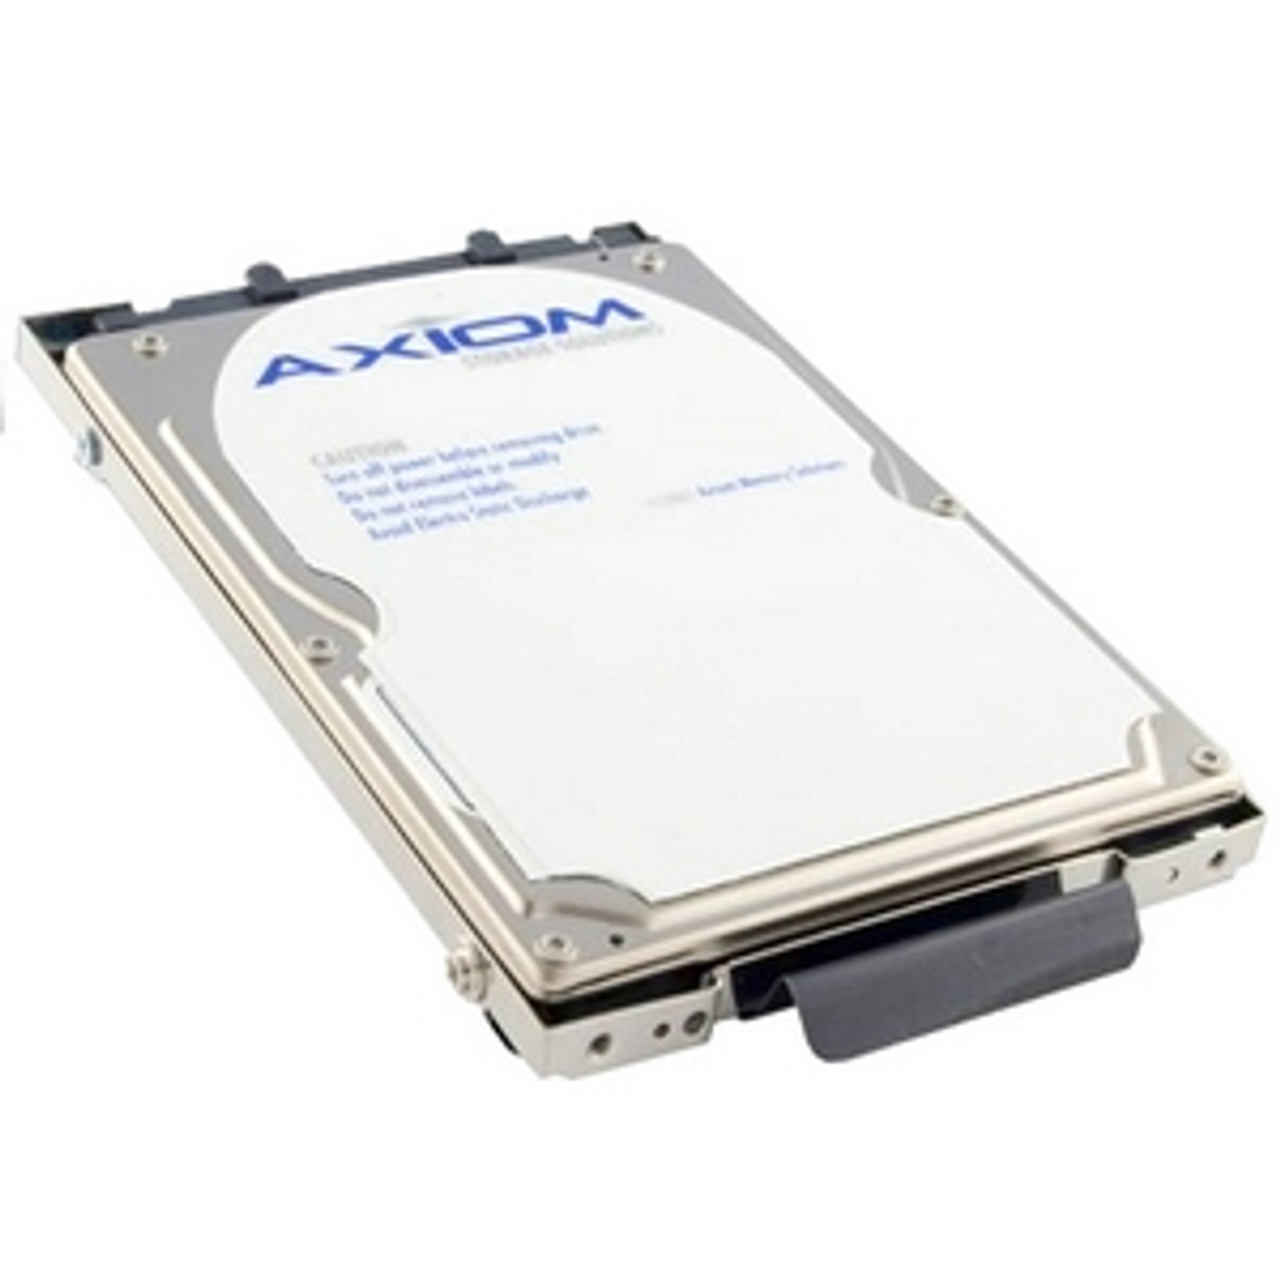 AXC-1230 - Axiom 30 GB 2.5 Plug-in Module Hard Drive - IDE